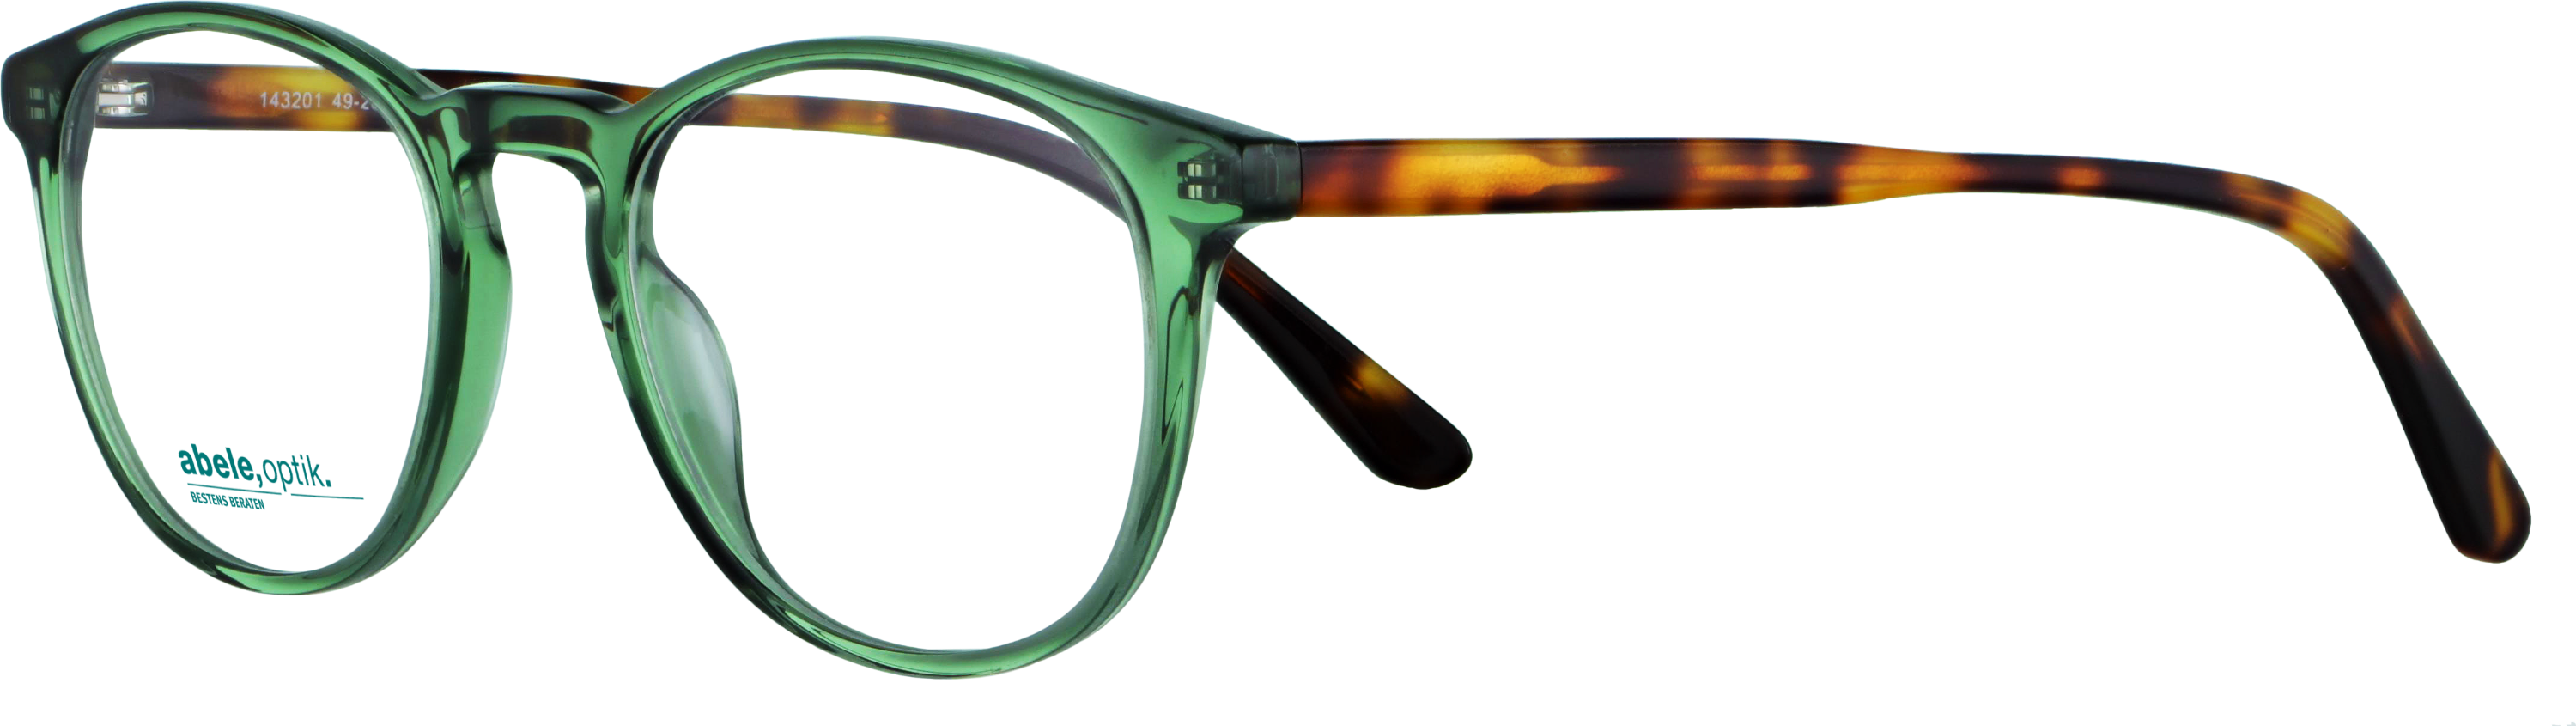 Das Bild zeigt die Korrektionsbrille 143201 von der Marke Abele Optik in grün.